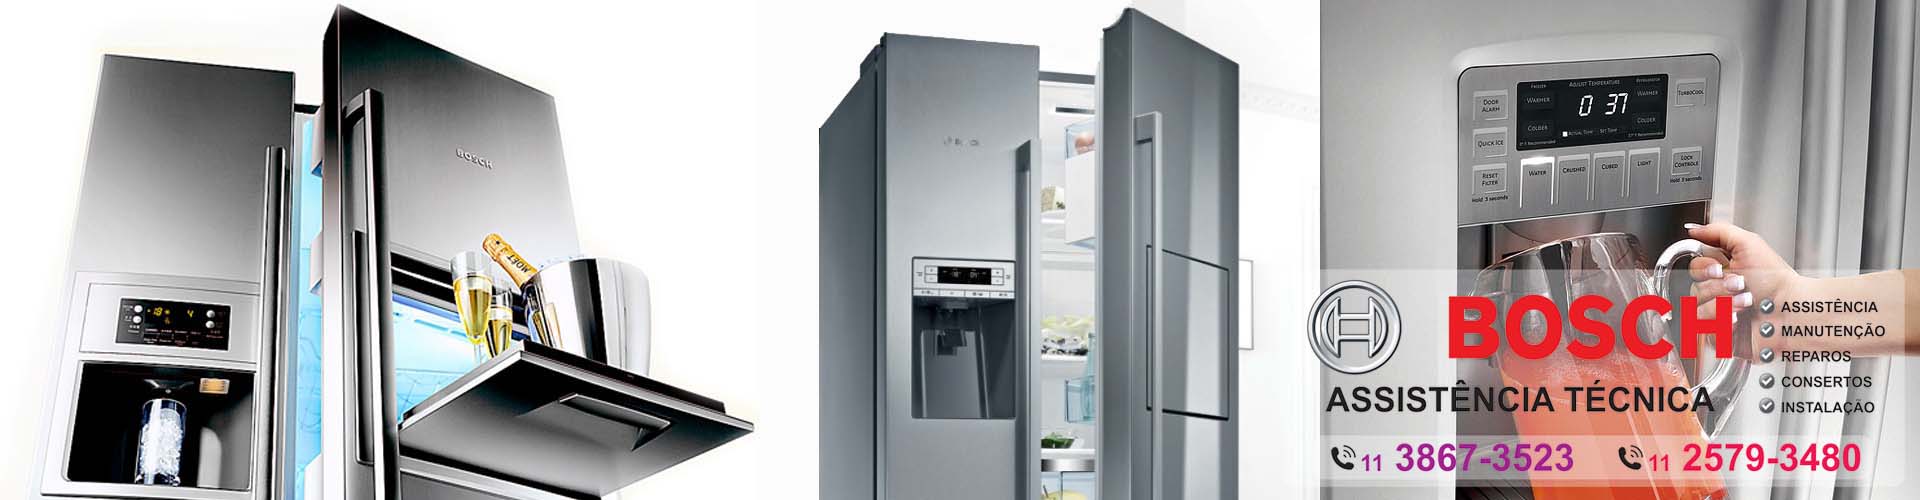 assistencia tecnica Refrigerador side by side bosch